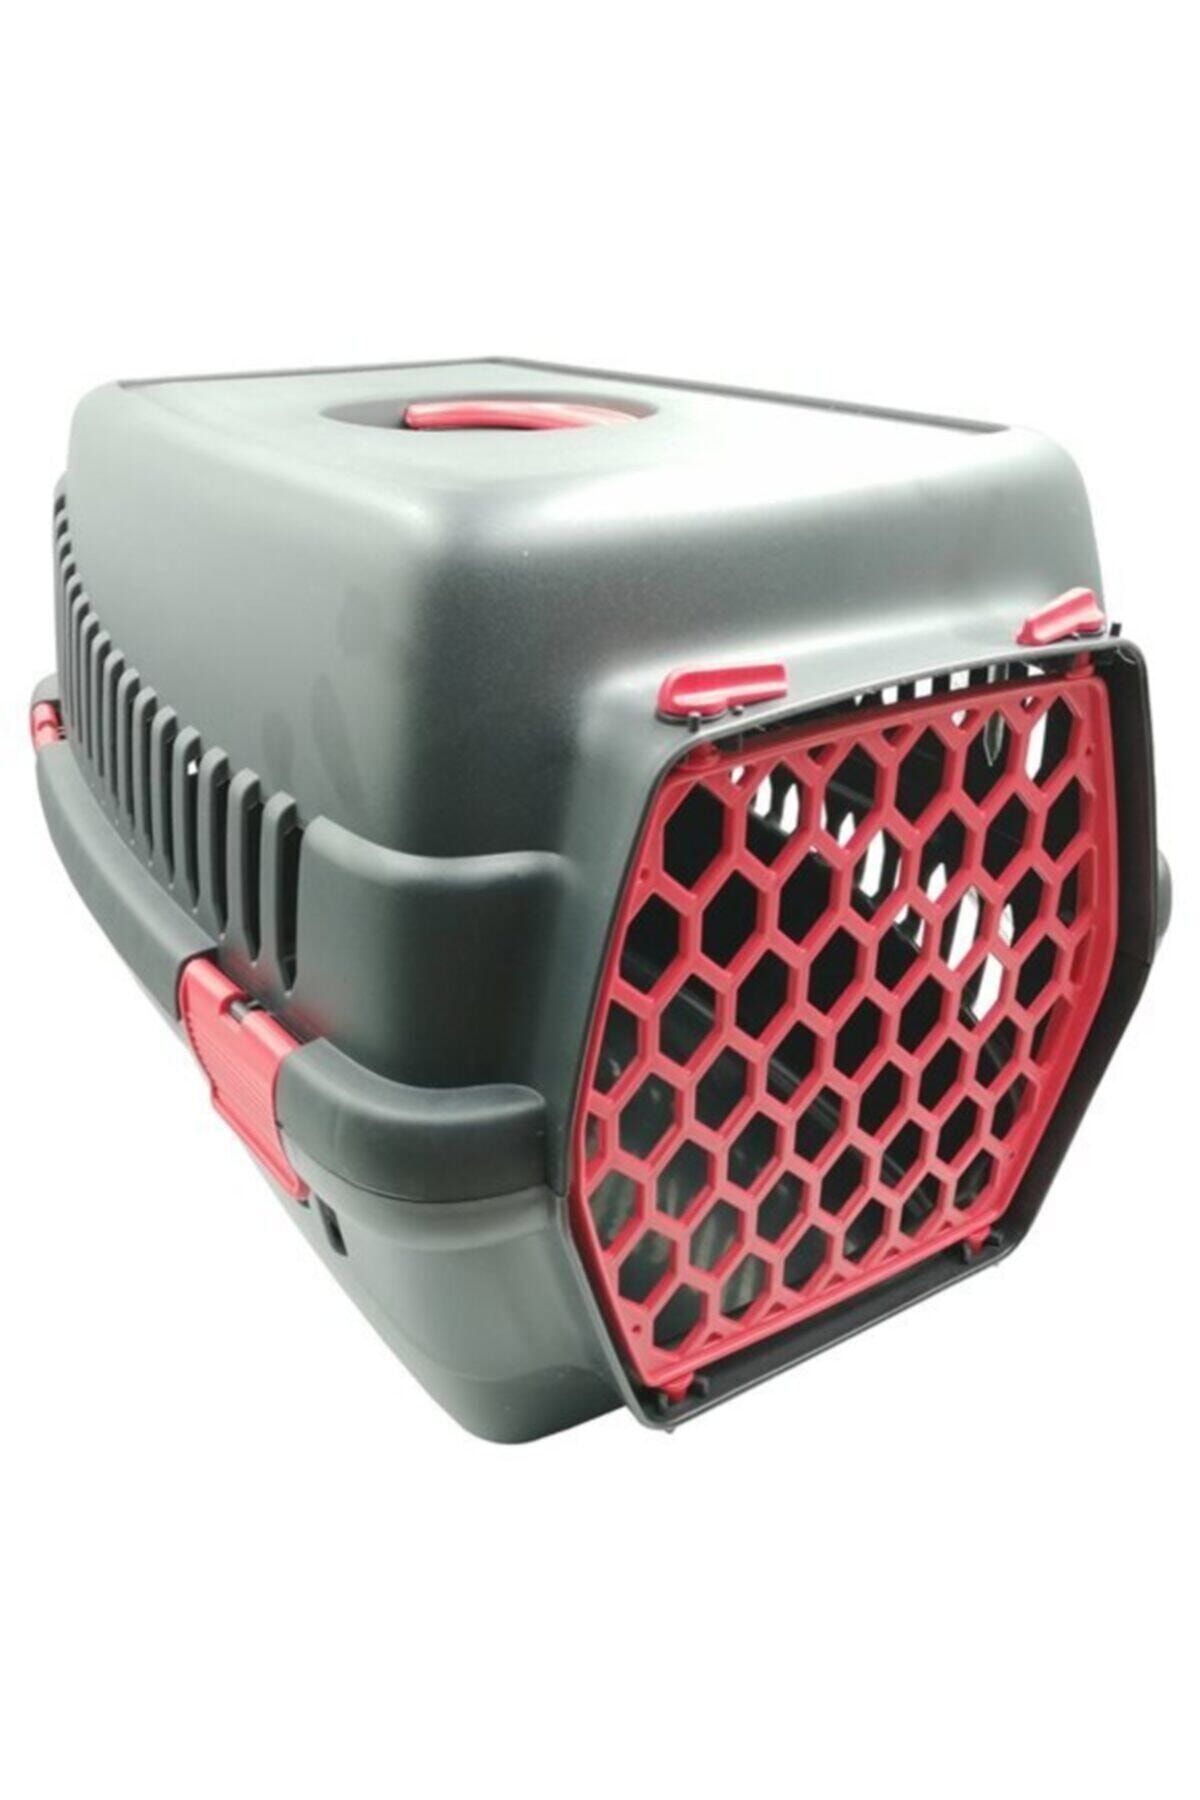 Şenyayla Plastik Evcil Hayvan Taşıma Kafesi (49X35X32) - Kırmızı